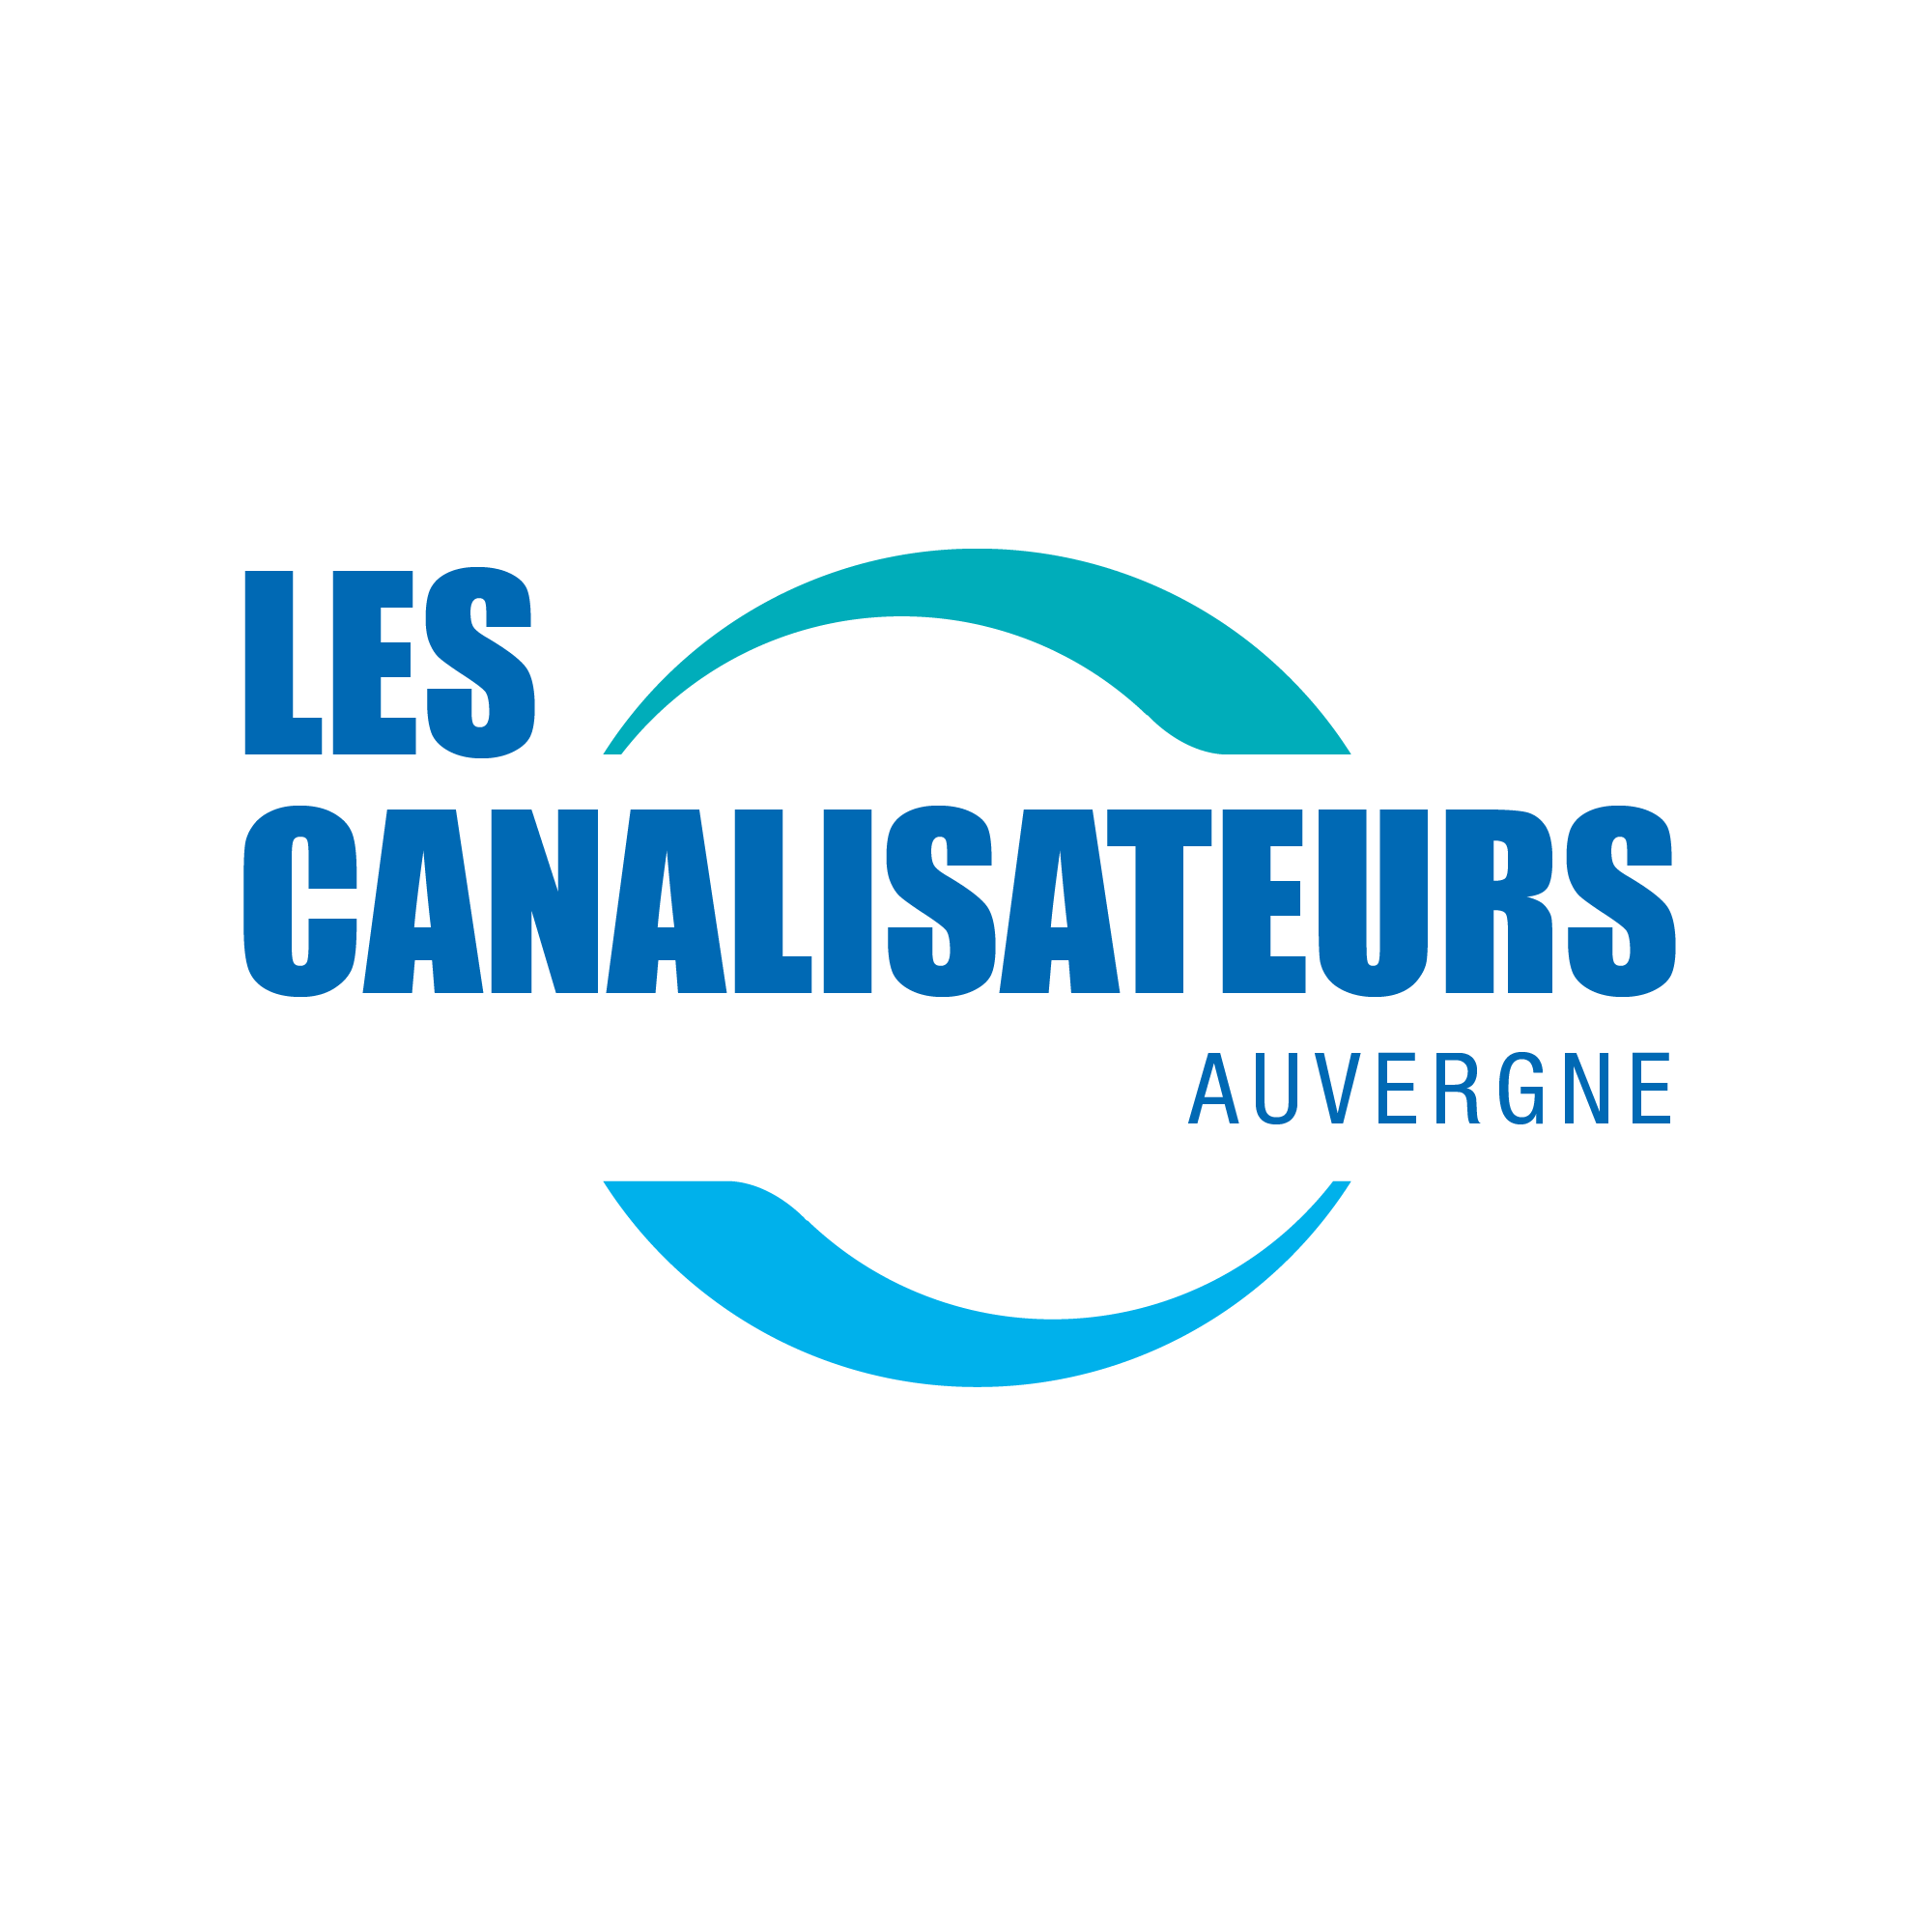 Les canalisateurs Auvergne logo